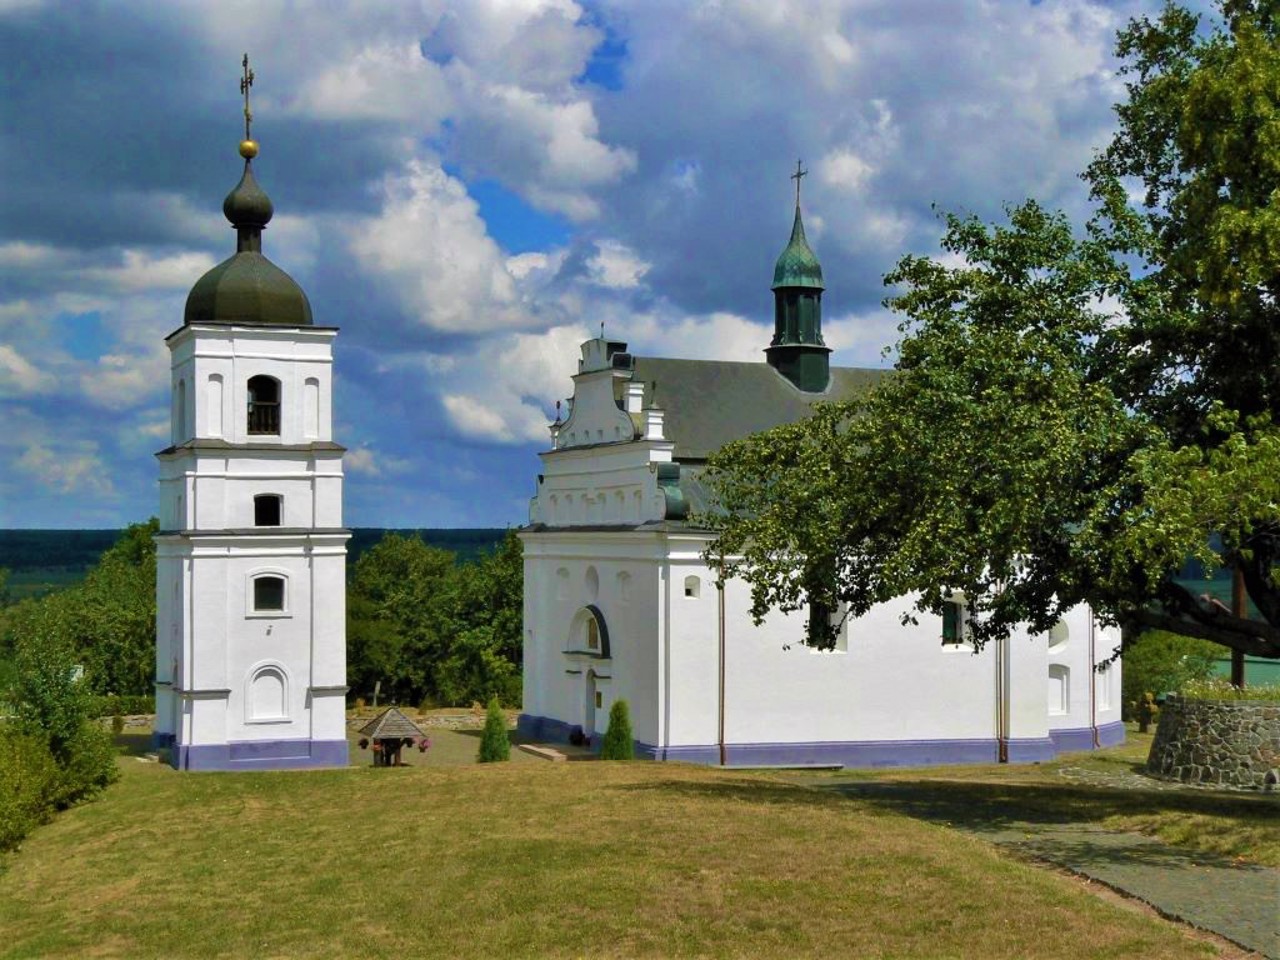 Illinska Church, Subotiv